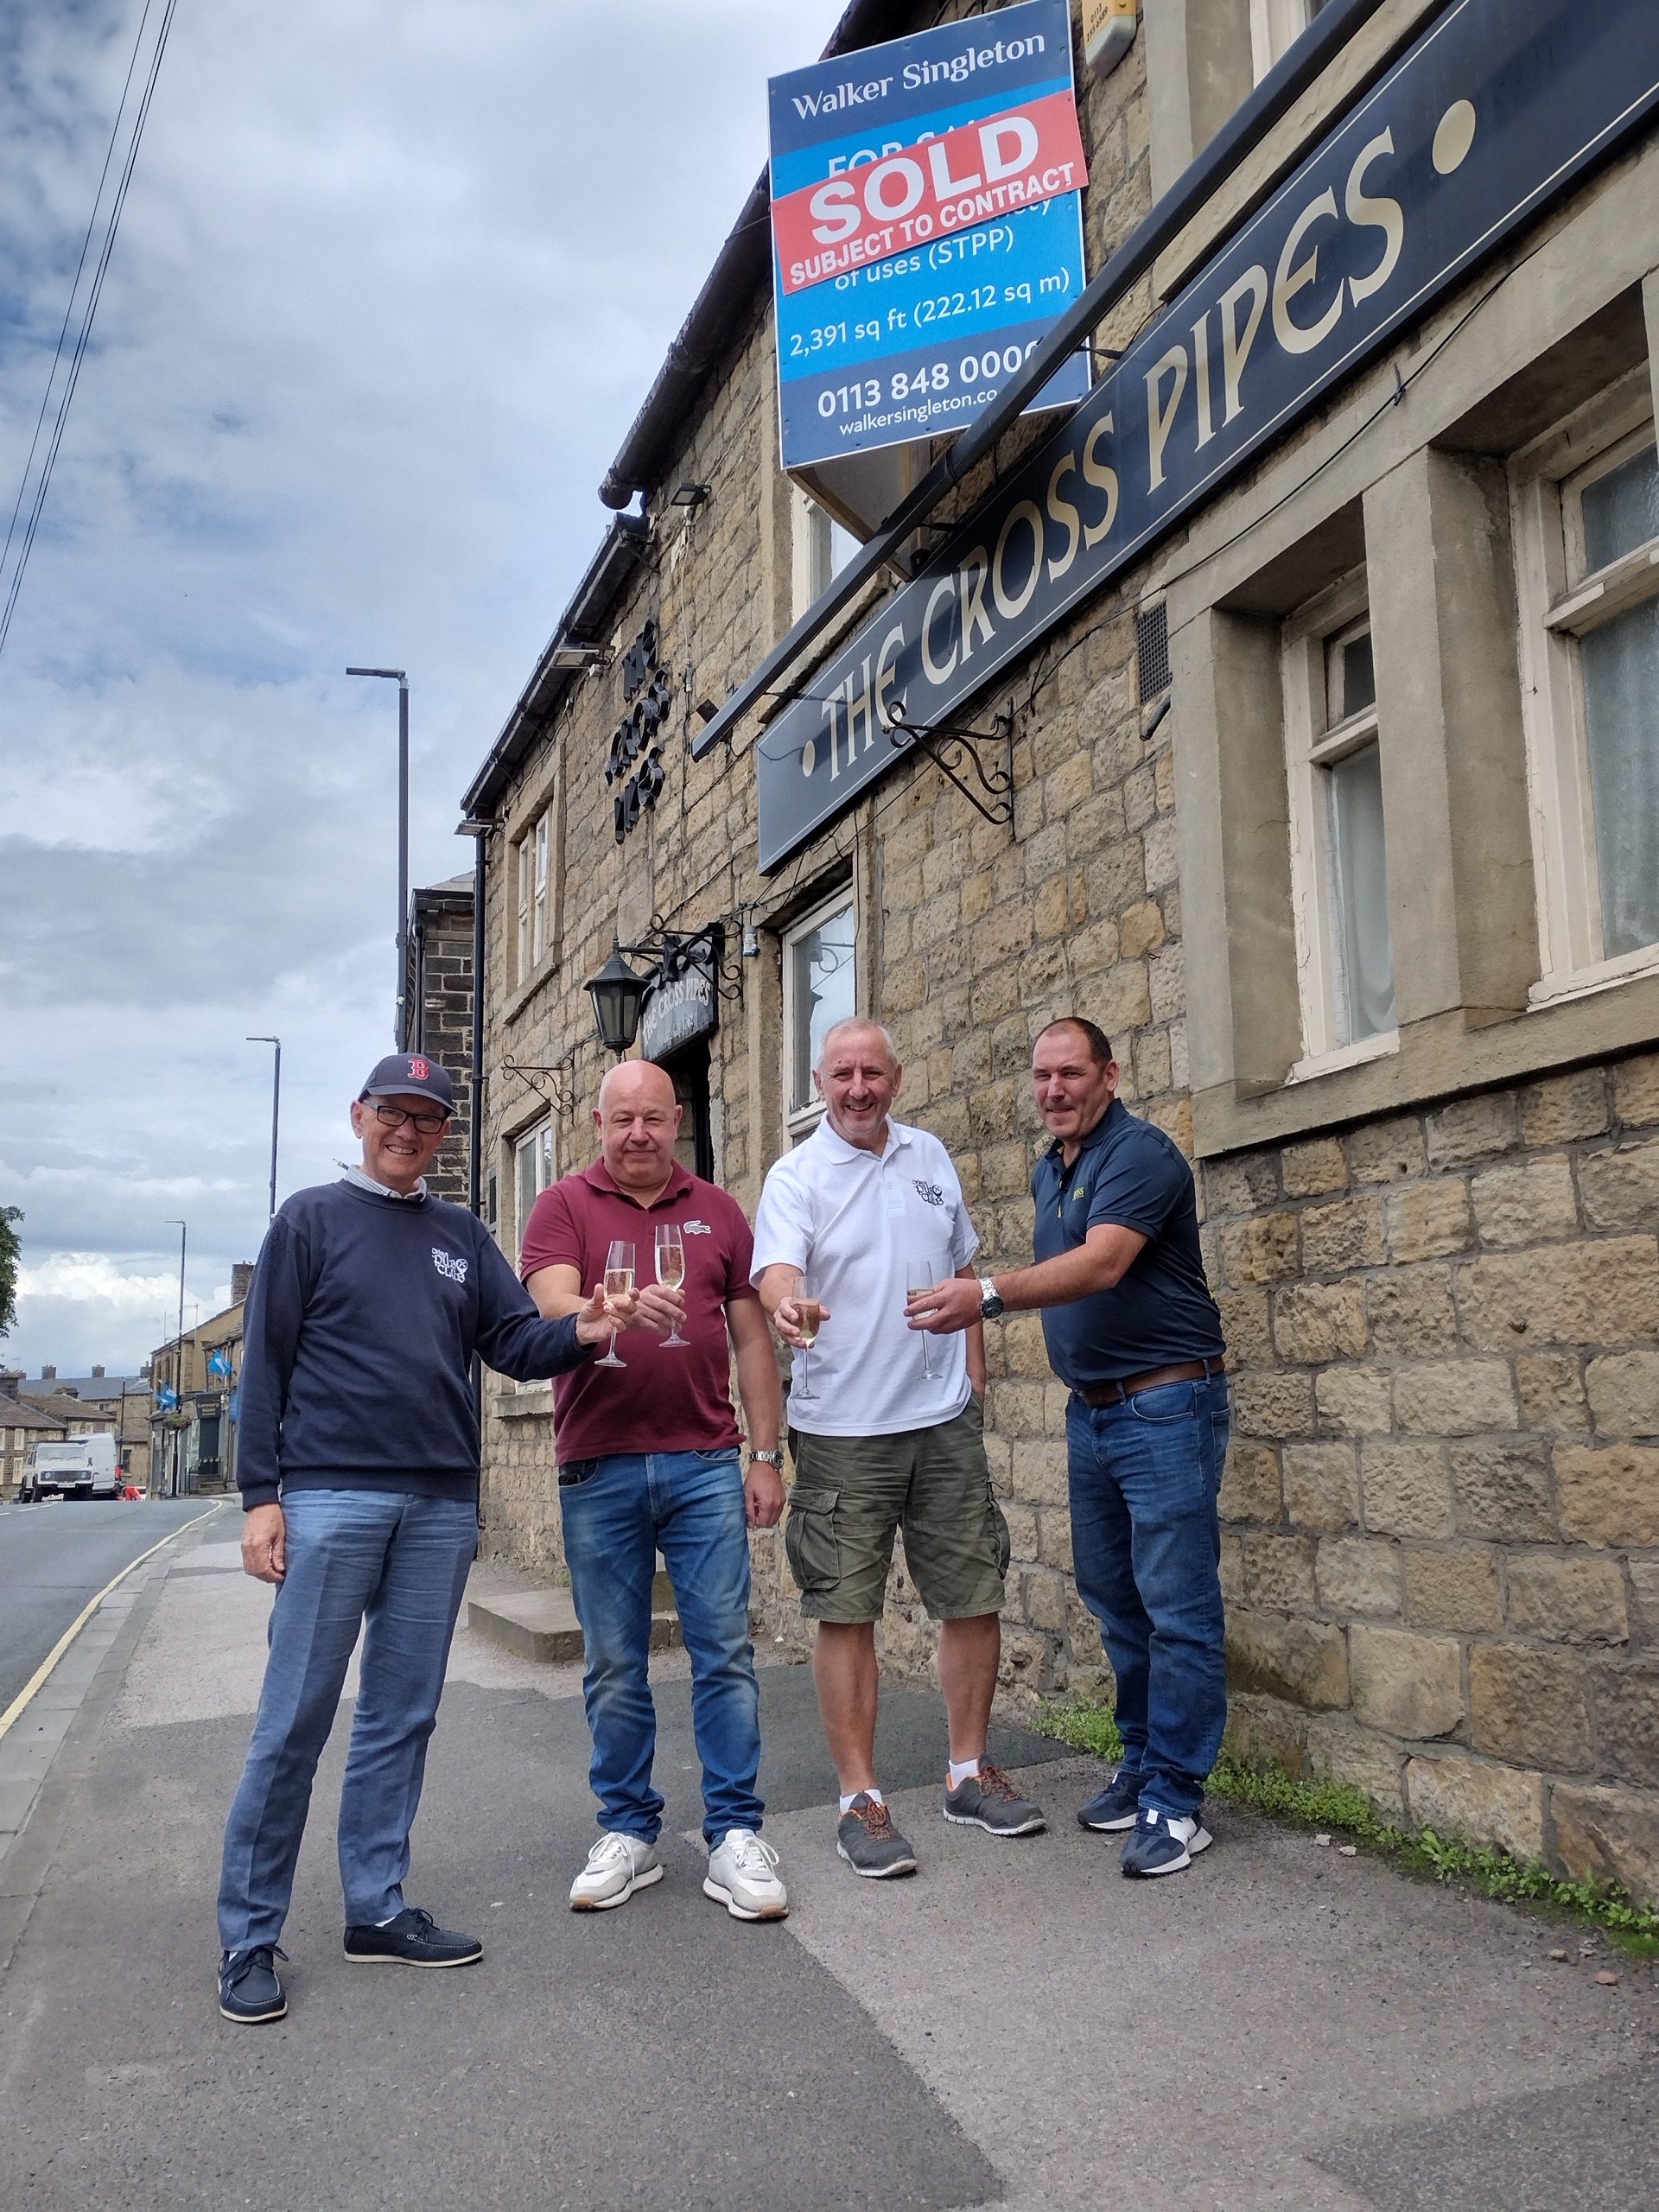 A new era for the historic Cross Pipes pub – Otley Pub Club celebrates local pub purchase